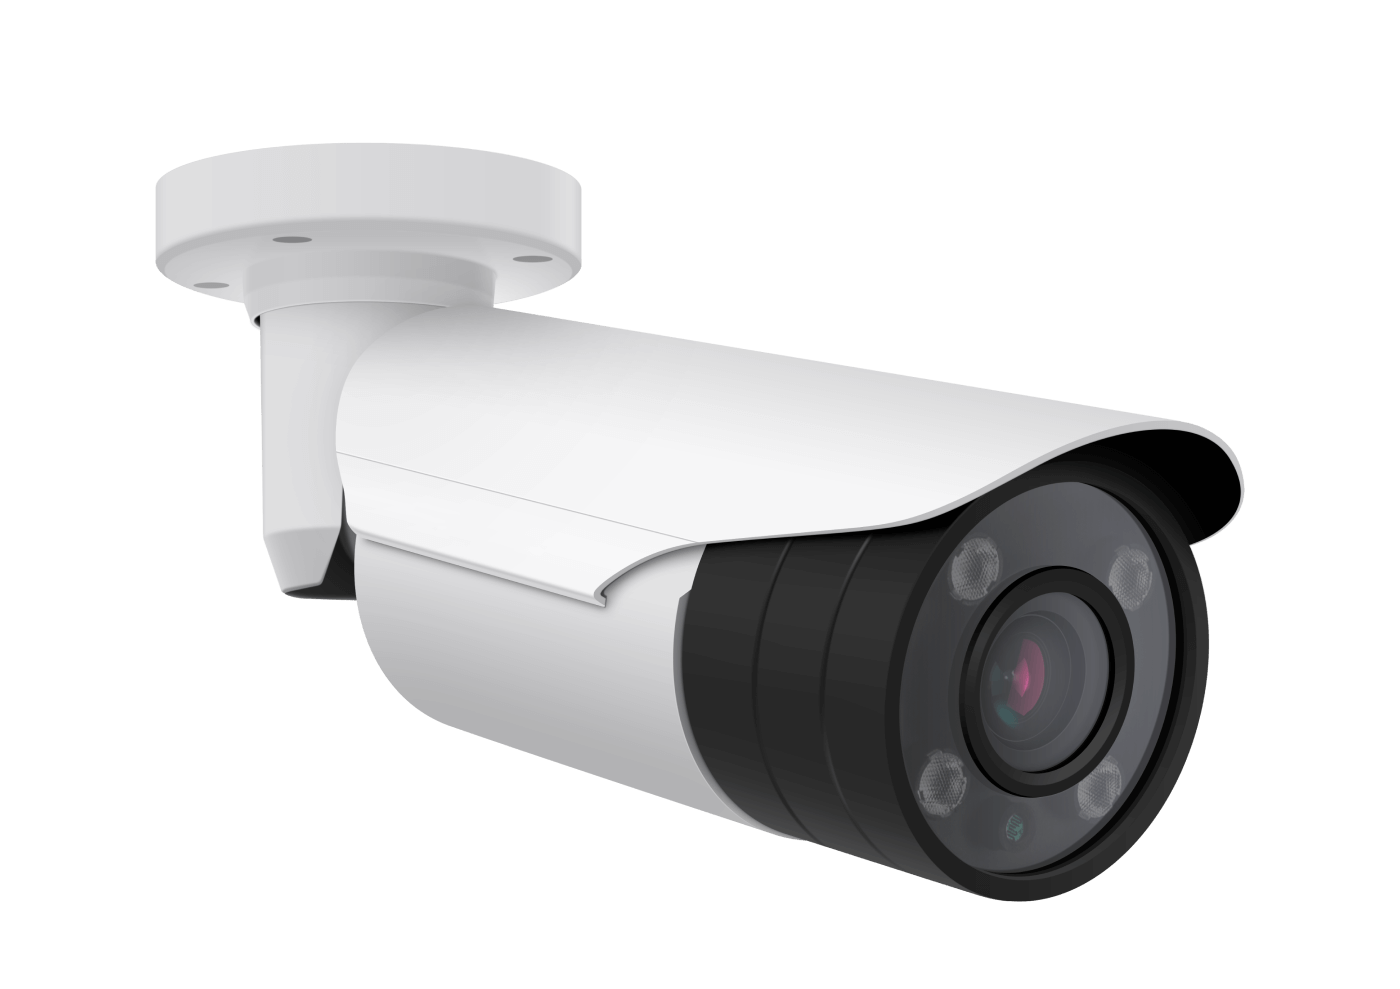 Камера видеонаблюдения JSH-x200ir. Камера видеонаблюдения (26.40.33.110-00006). Камера наблюдения AHD-108 Smart Vision. N6603 IP-видеокамера. Камеры видеонаблюдения междуреченск